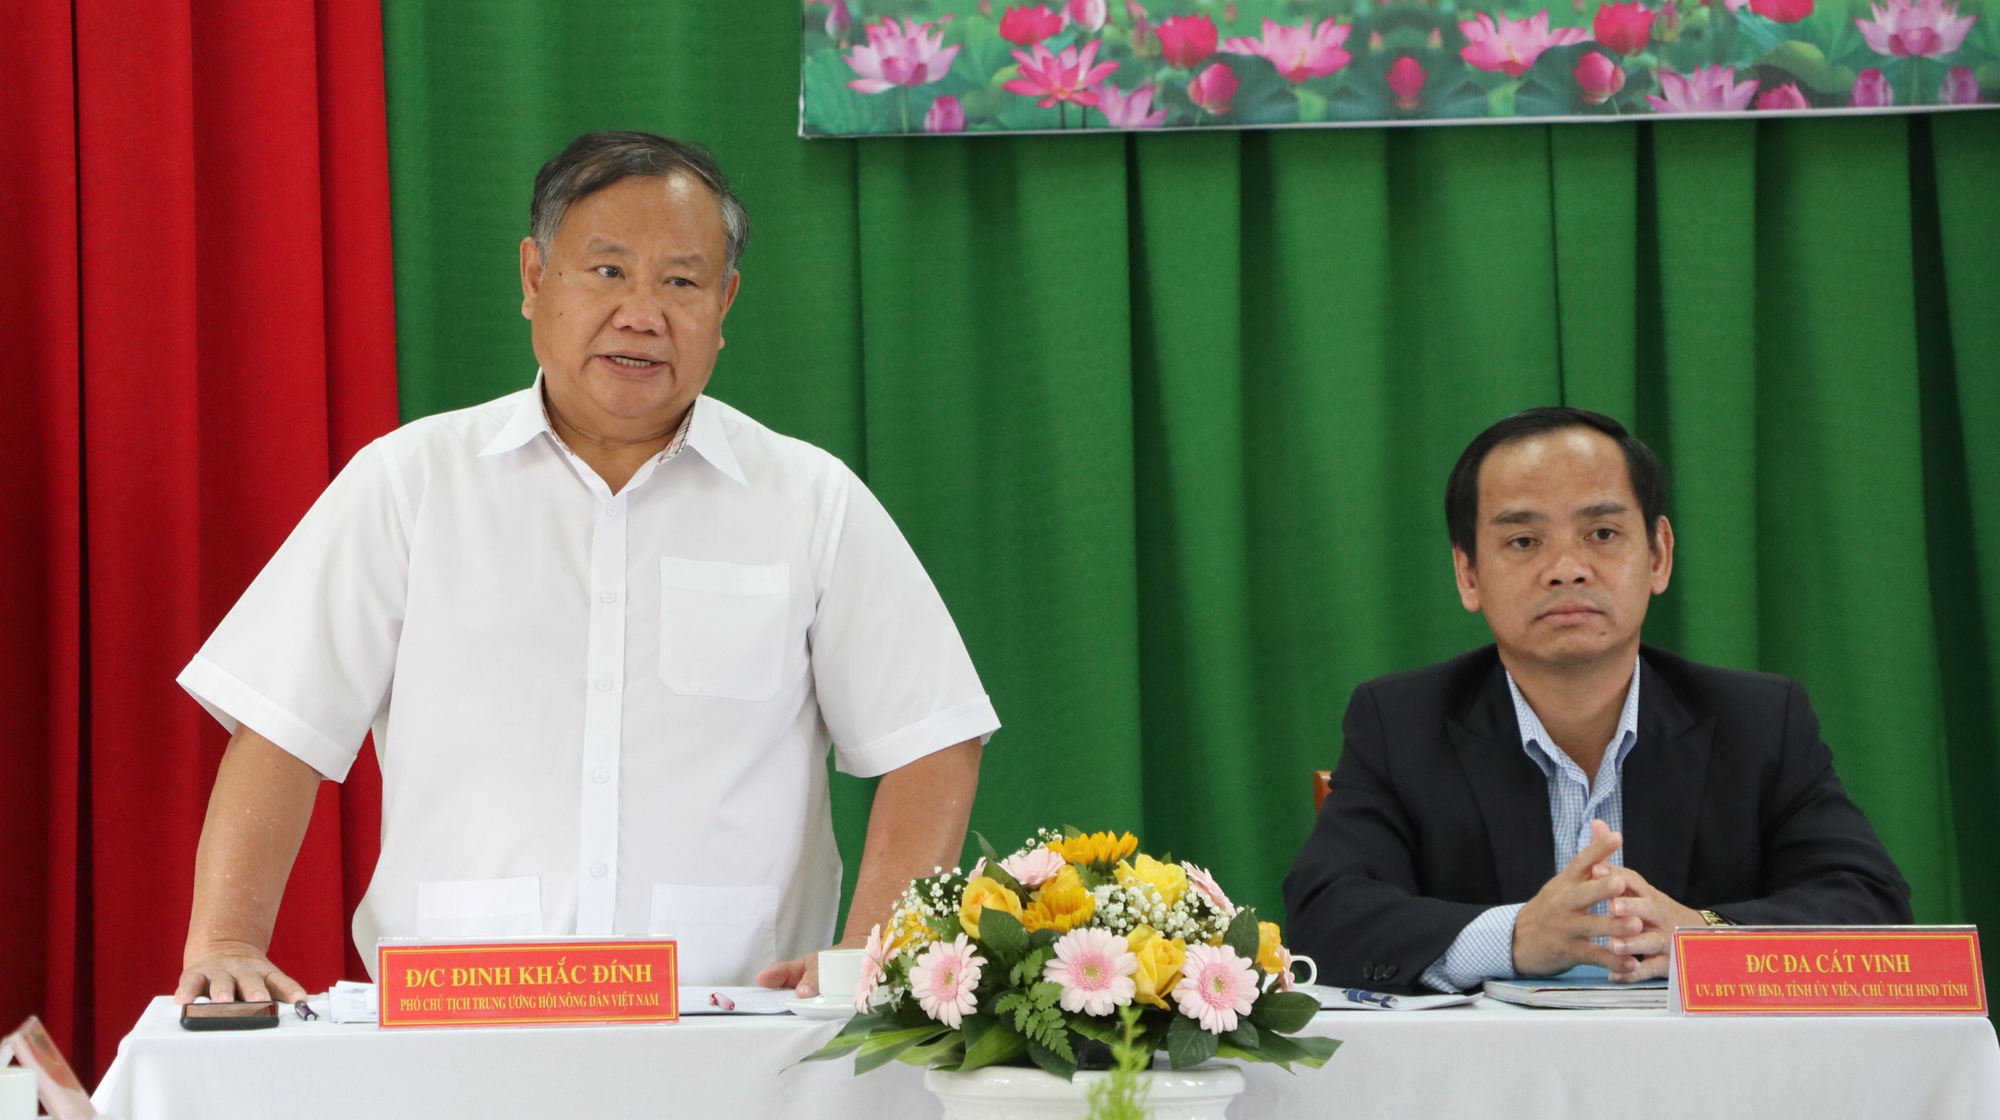 Phó Chủ tịch Hội Nông dân Việt Nam Đinh Khắc Đính làm việc với Hội Nông dân tỉnh Lâm Đồng- Ảnh 2.